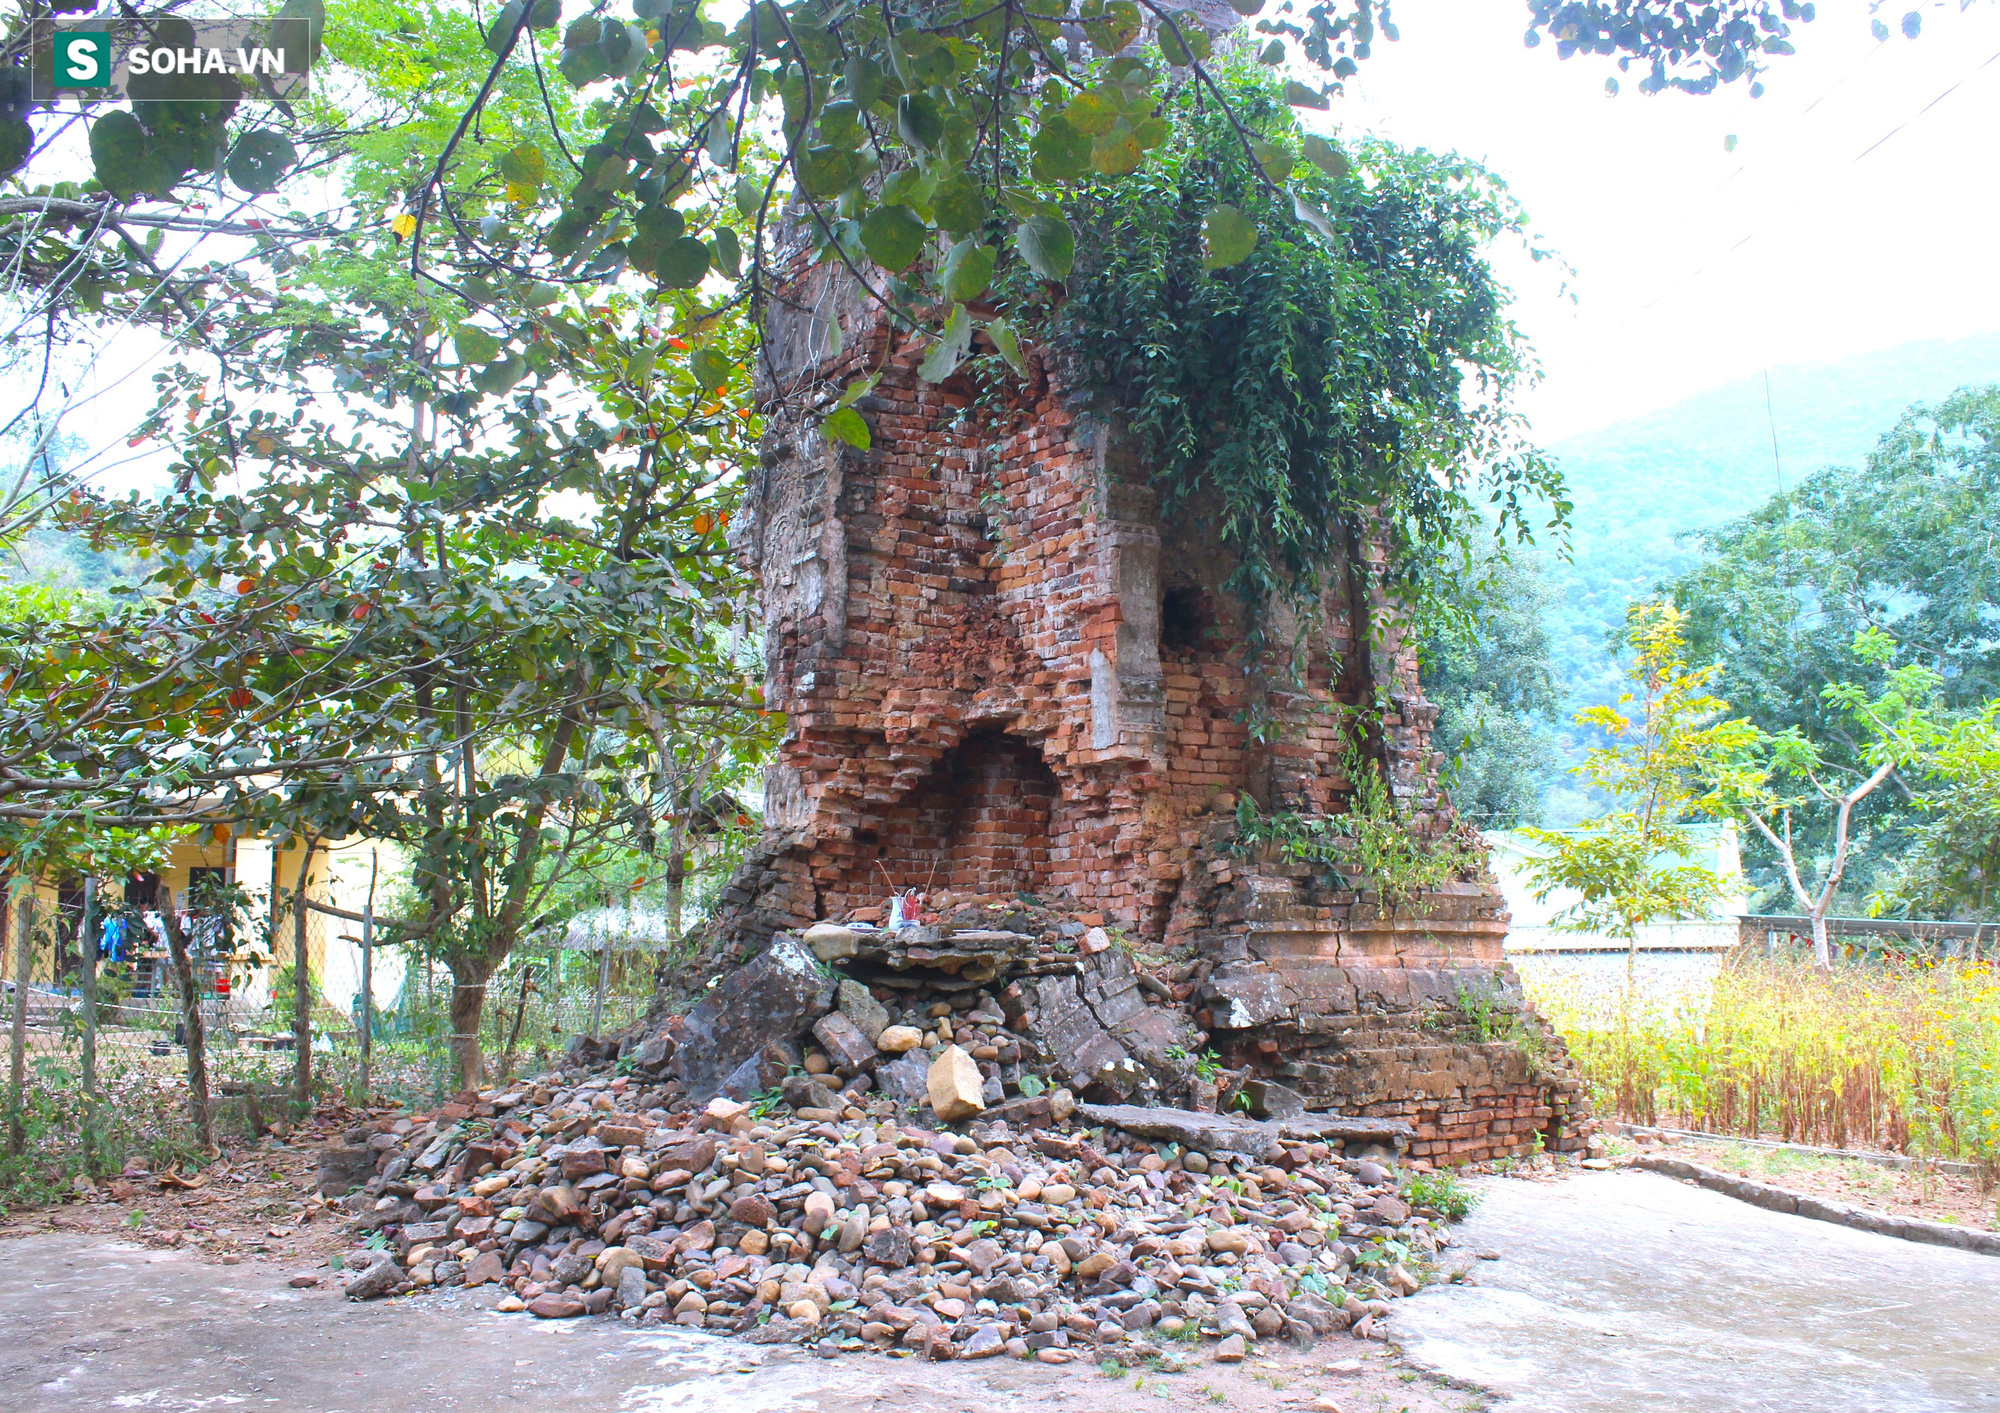 Huyền bí ngọn tháp cổ nghìn năm cao vút với hoa văn lạ mắt giữa núi rừng xứ Nghệ - Ảnh 11.